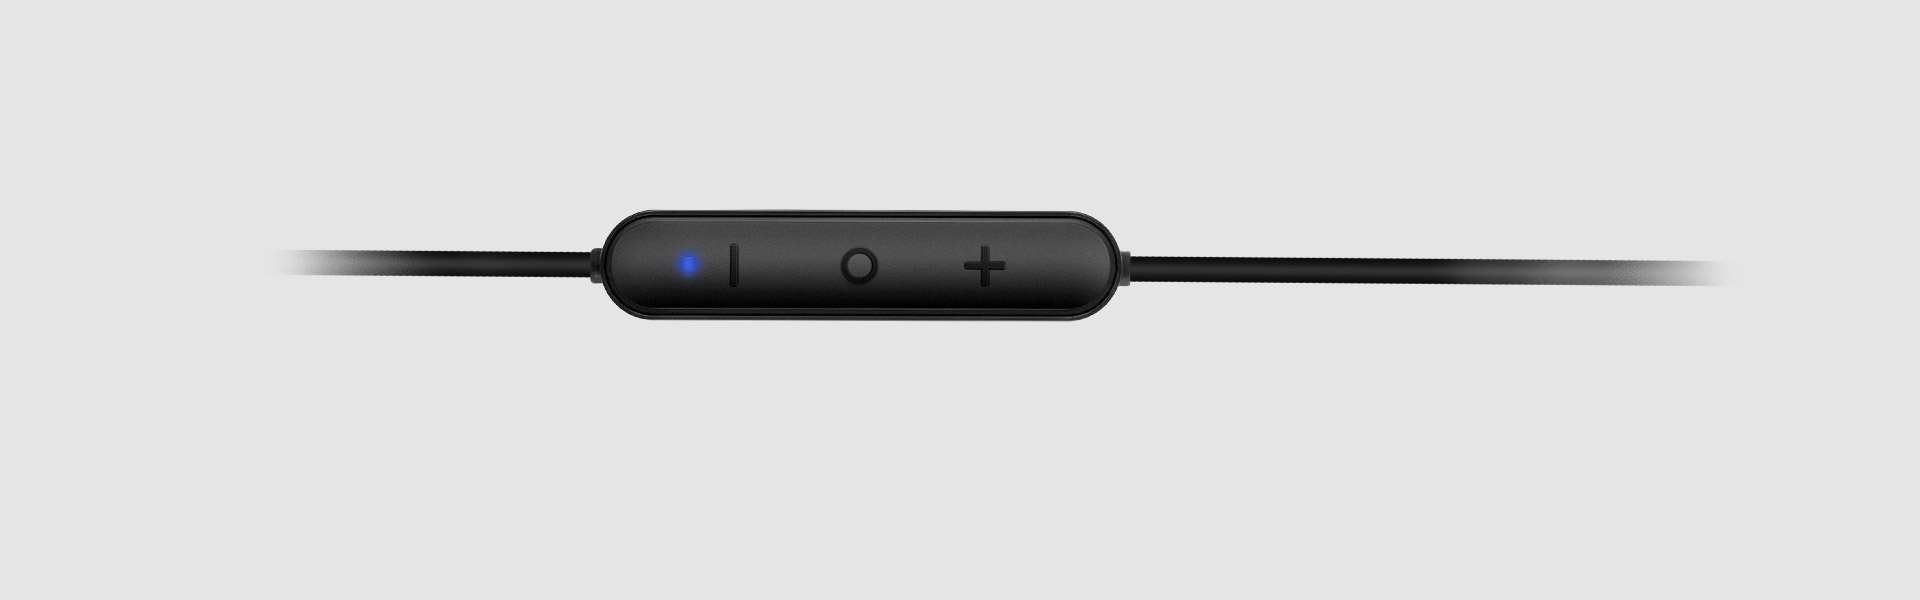 Ausgezeichnete Bluetooth®-Kompatibilität, stabile Verbindung